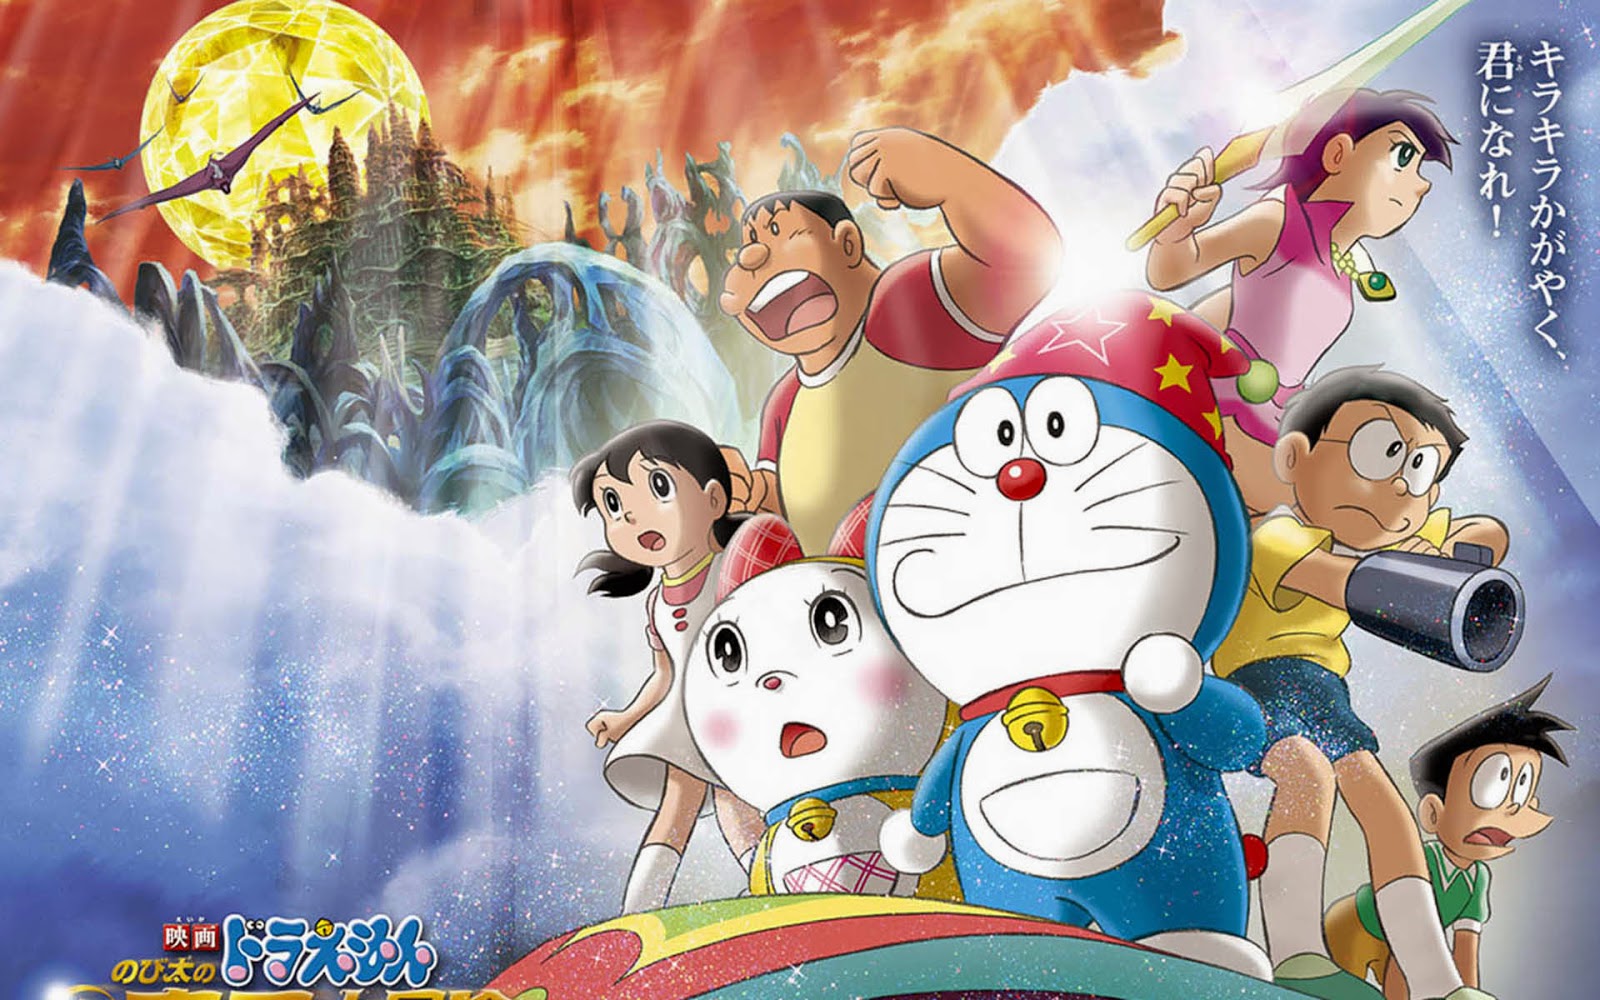 Komik Doraemon Episode Terakhir Takut Menangis Jangan Baca